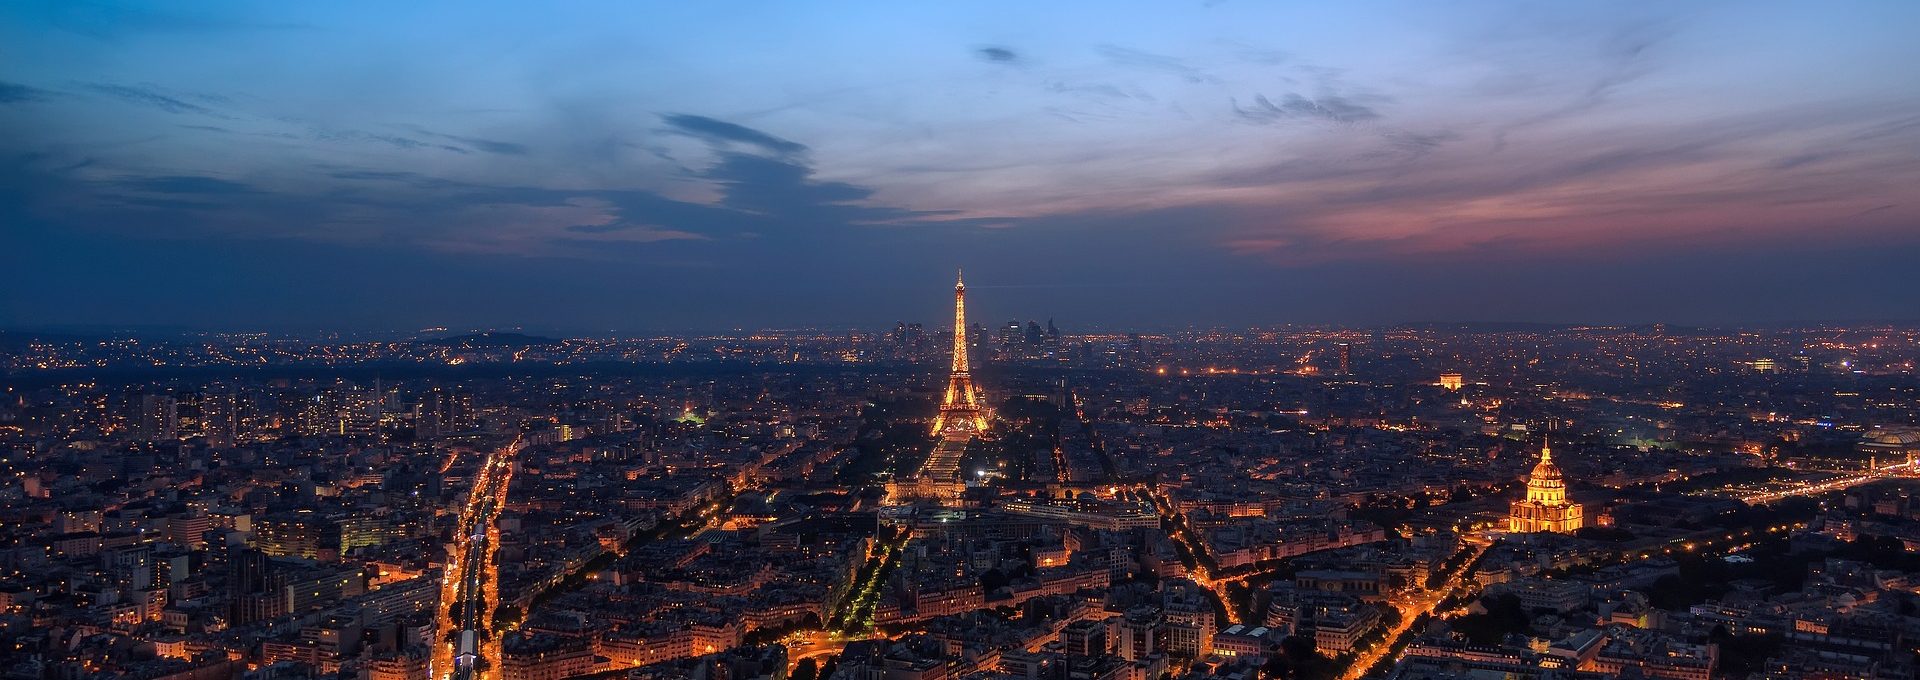 Vista de Paris à noite com destaque para a Torre Eiffel em destaque